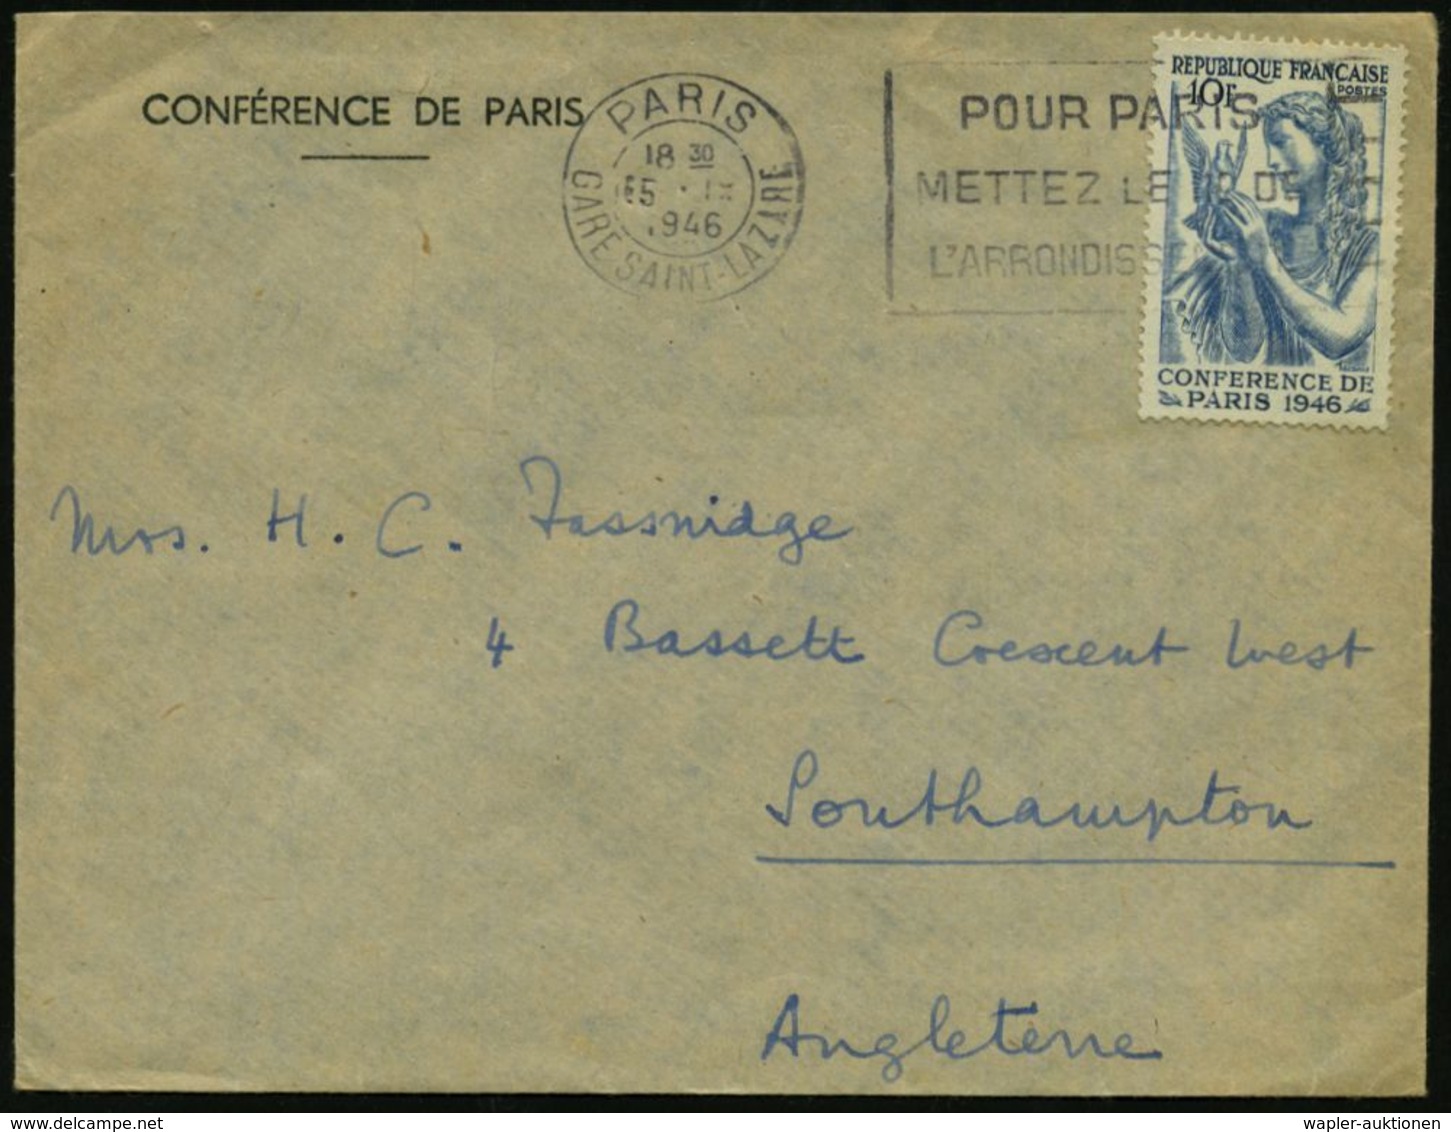 FRANKREICH 1946 (15.9.) 10 F. Friedenskonferenz, EF (Frau Mit Taube) Passender, Amtl. Dienst-Ausl.-Bf.: CONFERENCE DE PA - ONU